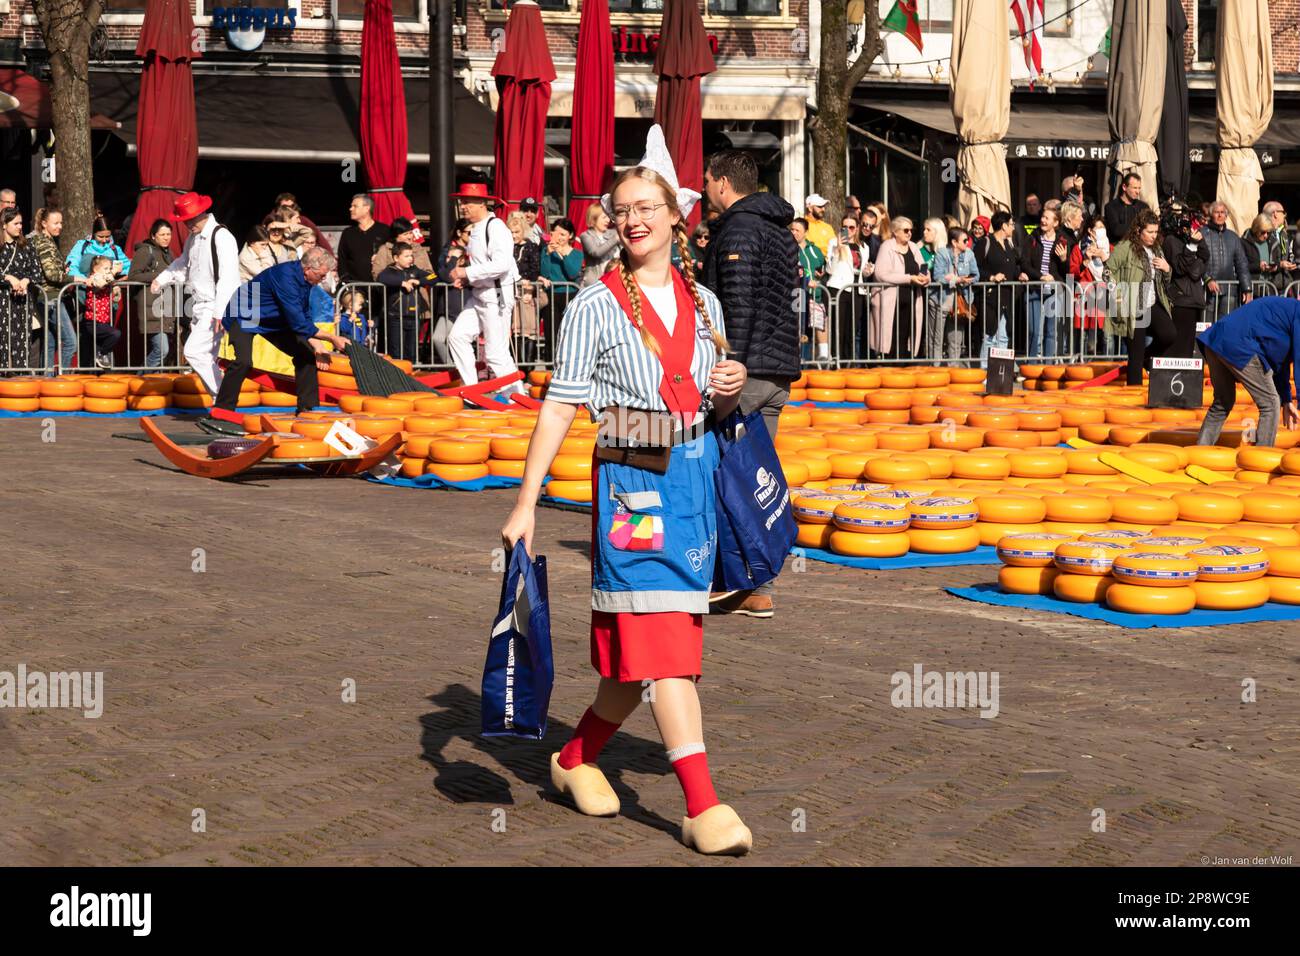 Cheese Girl en costume traditionnel et des chaussures en bois marche souriant avec sa marchandise à travers le marché du fromage dans la ville d'Alkmaar. Banque D'Images